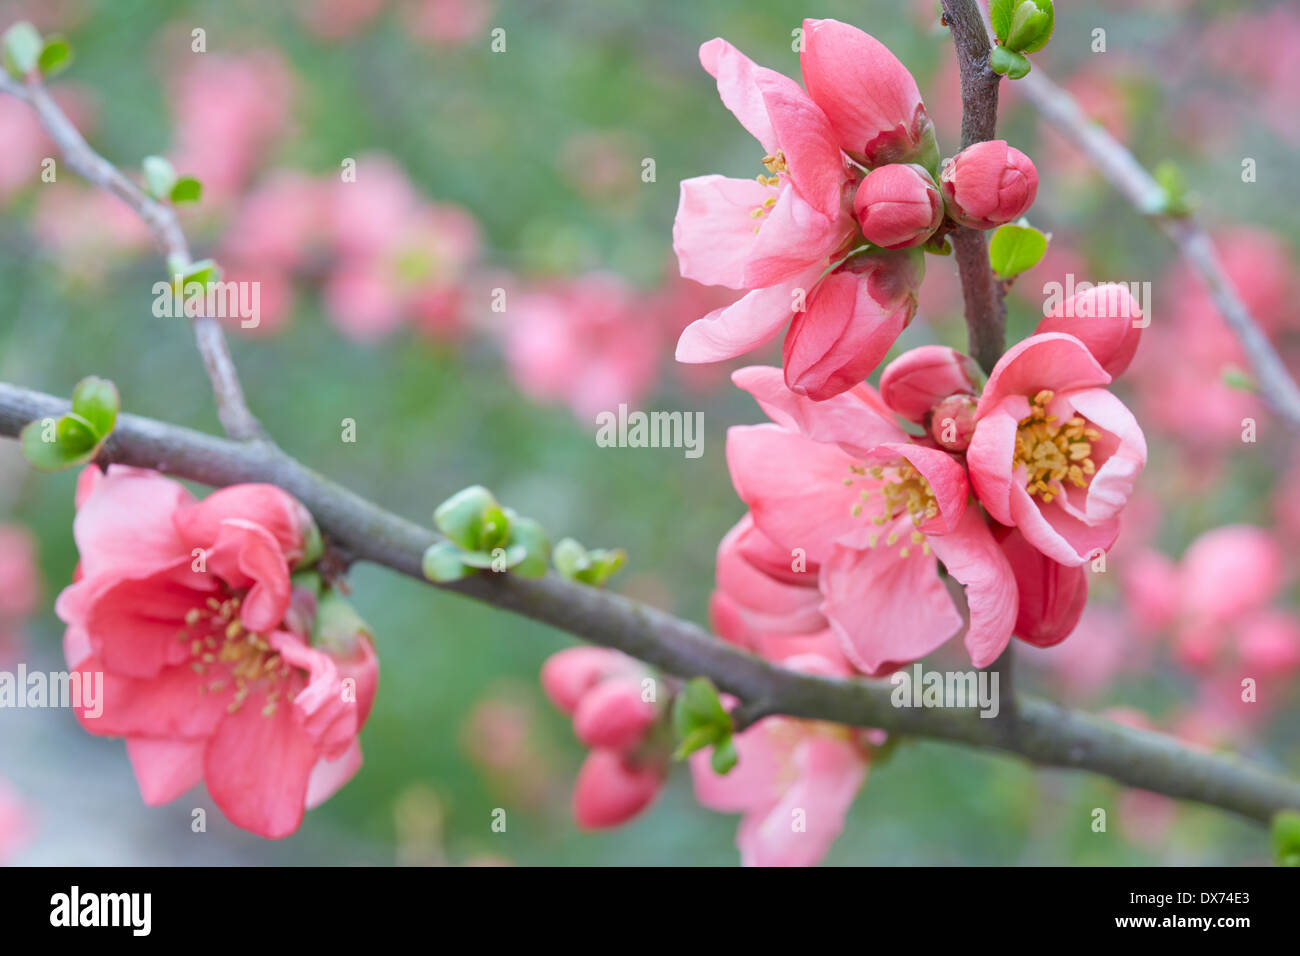 Les fleurs du printemps sur les rameaux, bourgeons et fleurs rose Banque D'Images